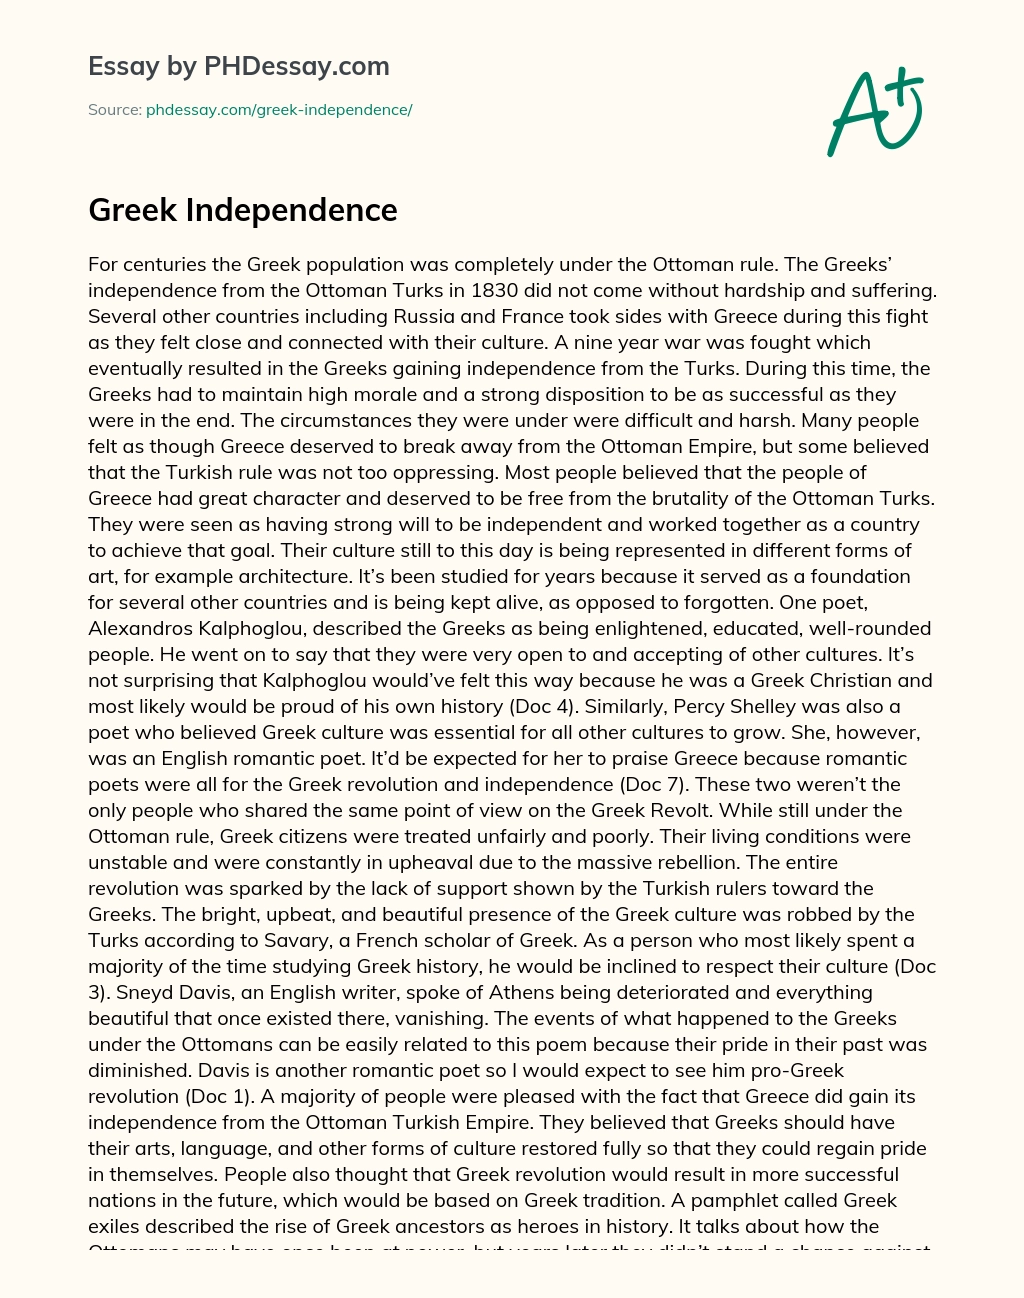 Greek Independence essay